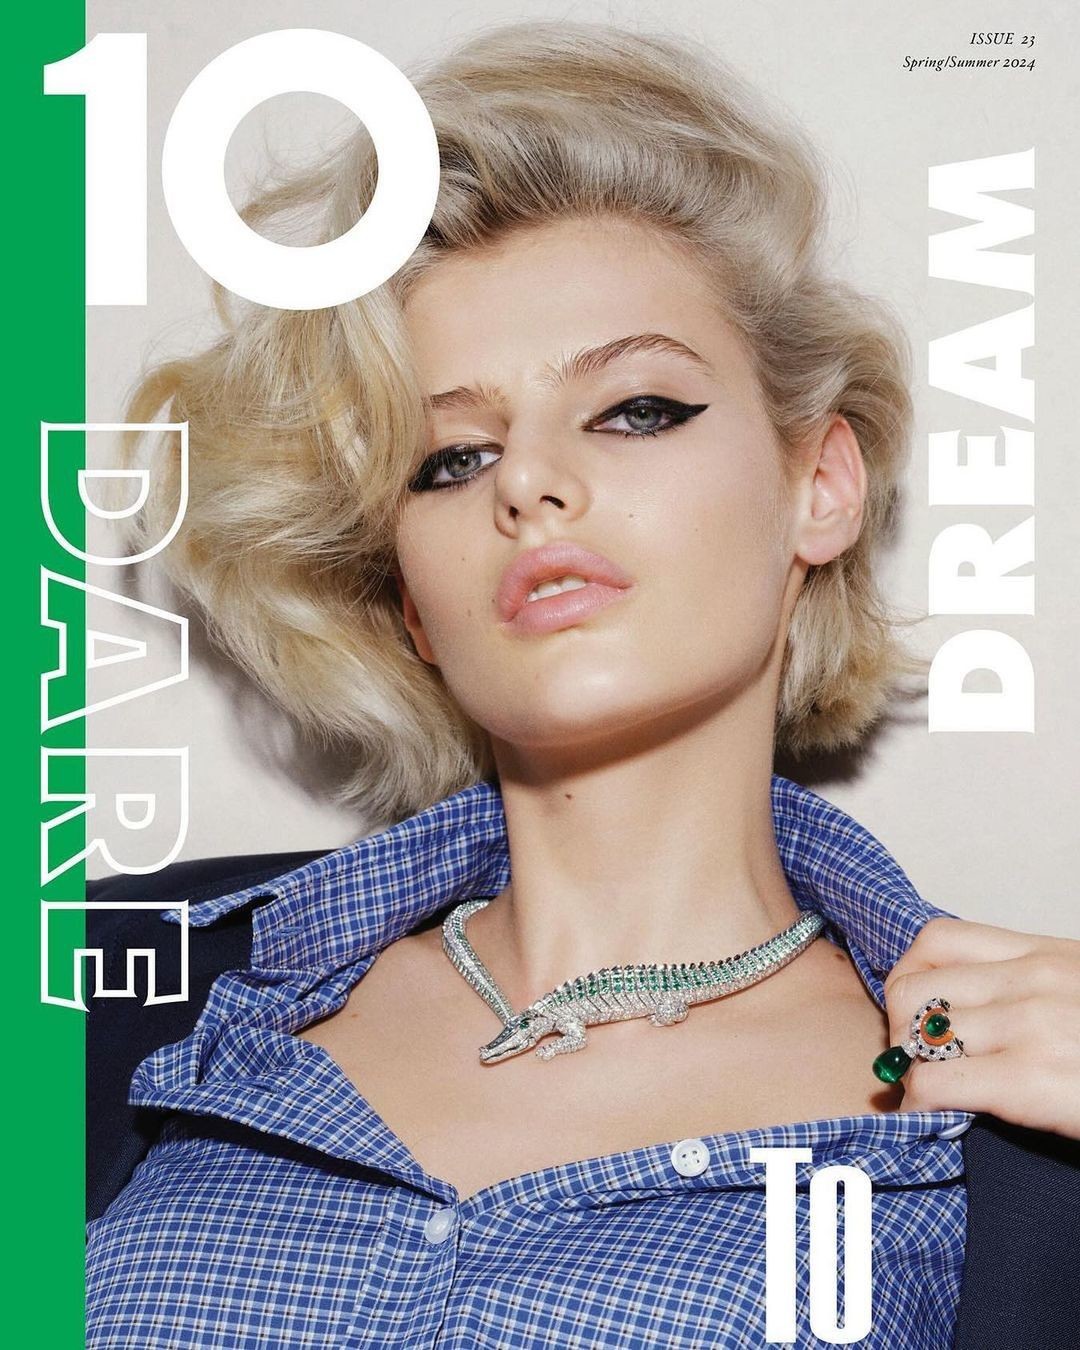 ISSUE 23 | DREAM - 10 MAGAZINE